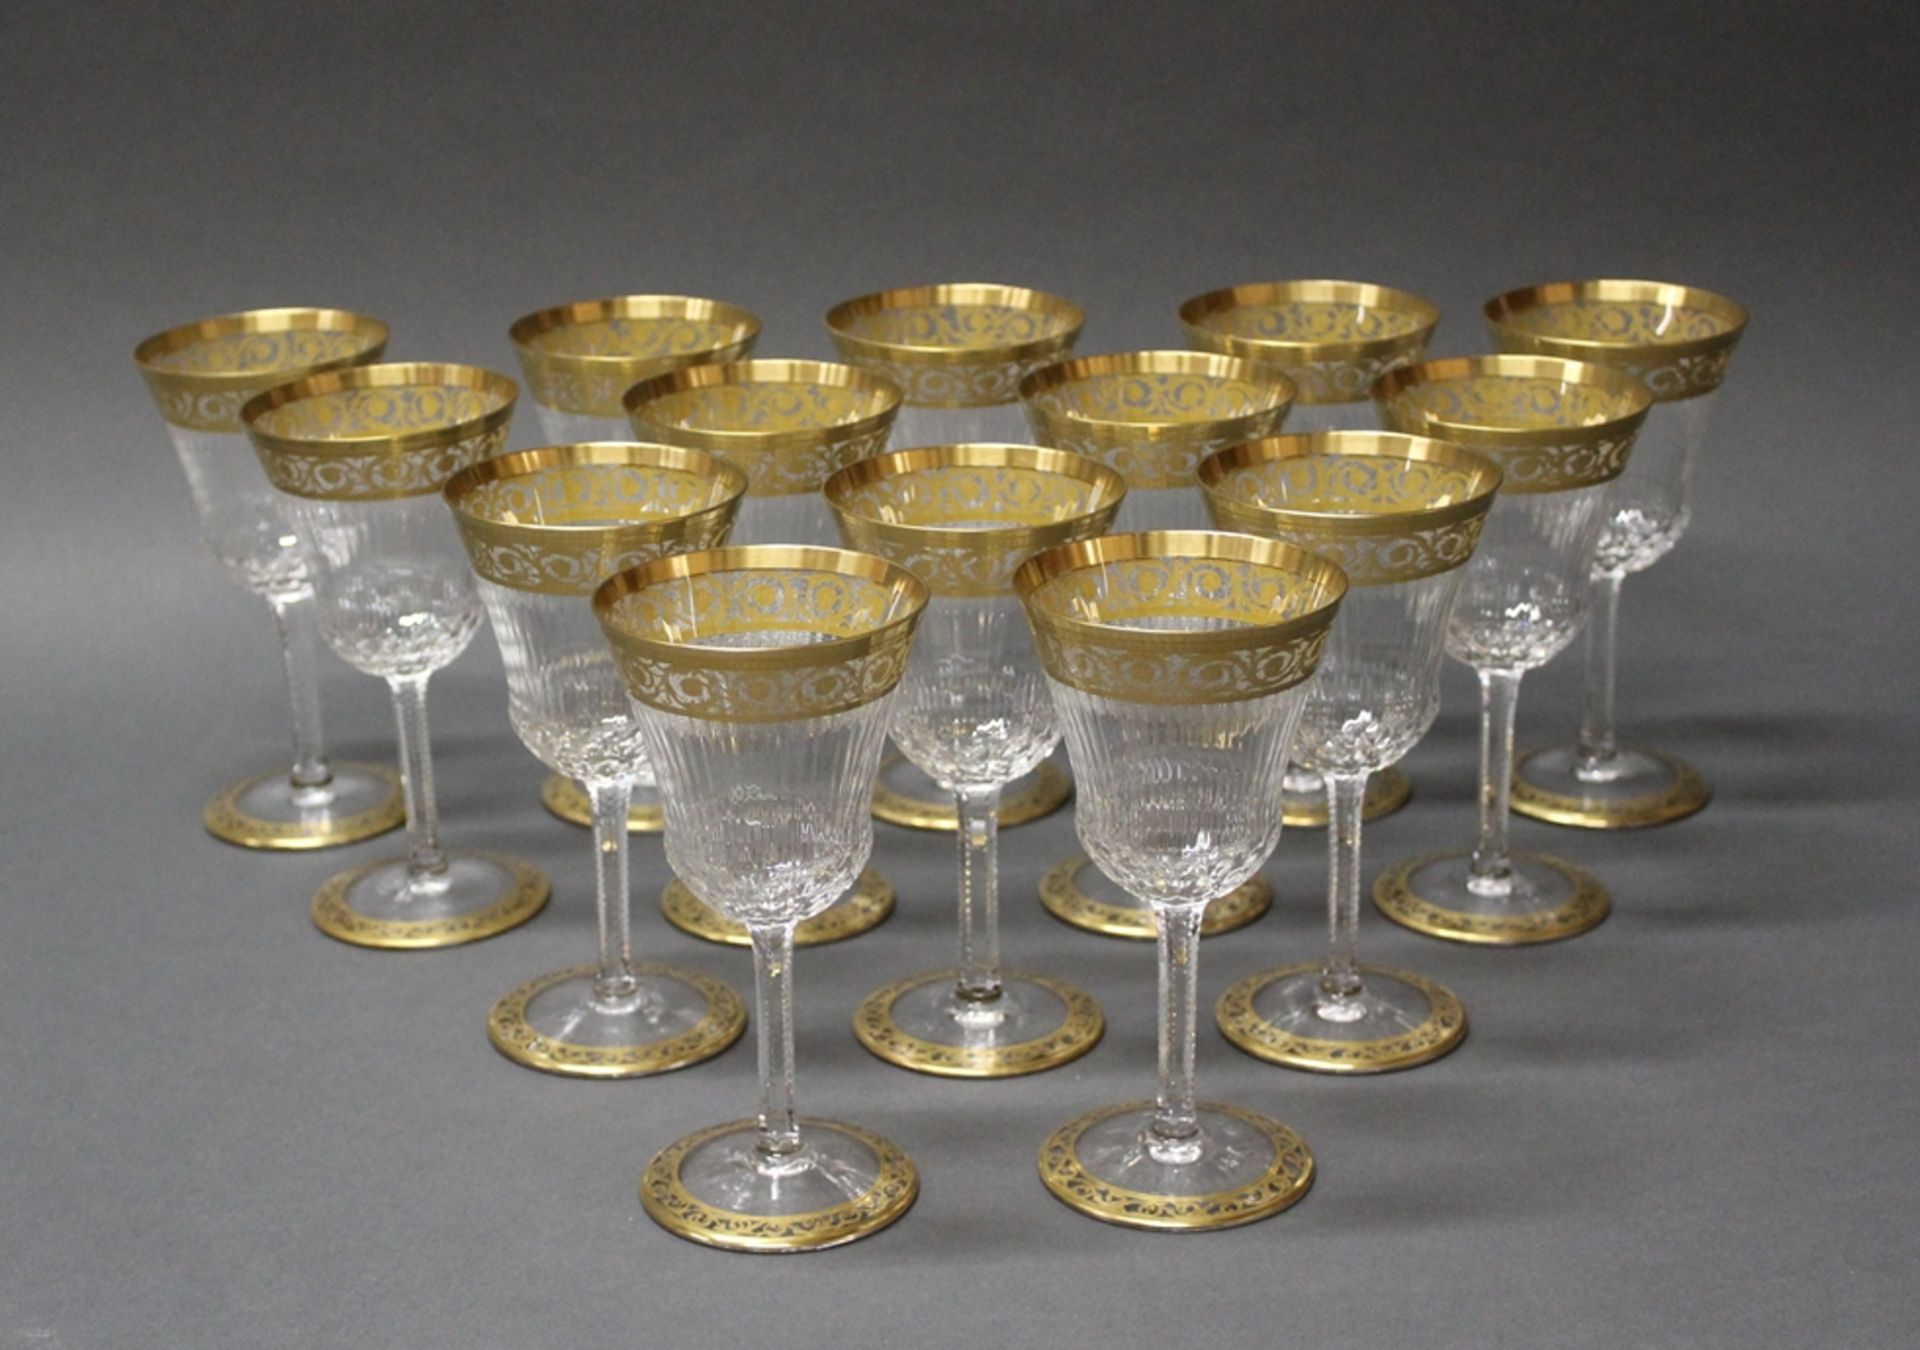 14 Weißweingläser, "Thistle", Cristallerie Saint Louis, 2. Hälfte 20. Jh., Dekor Thistle Gold, farb